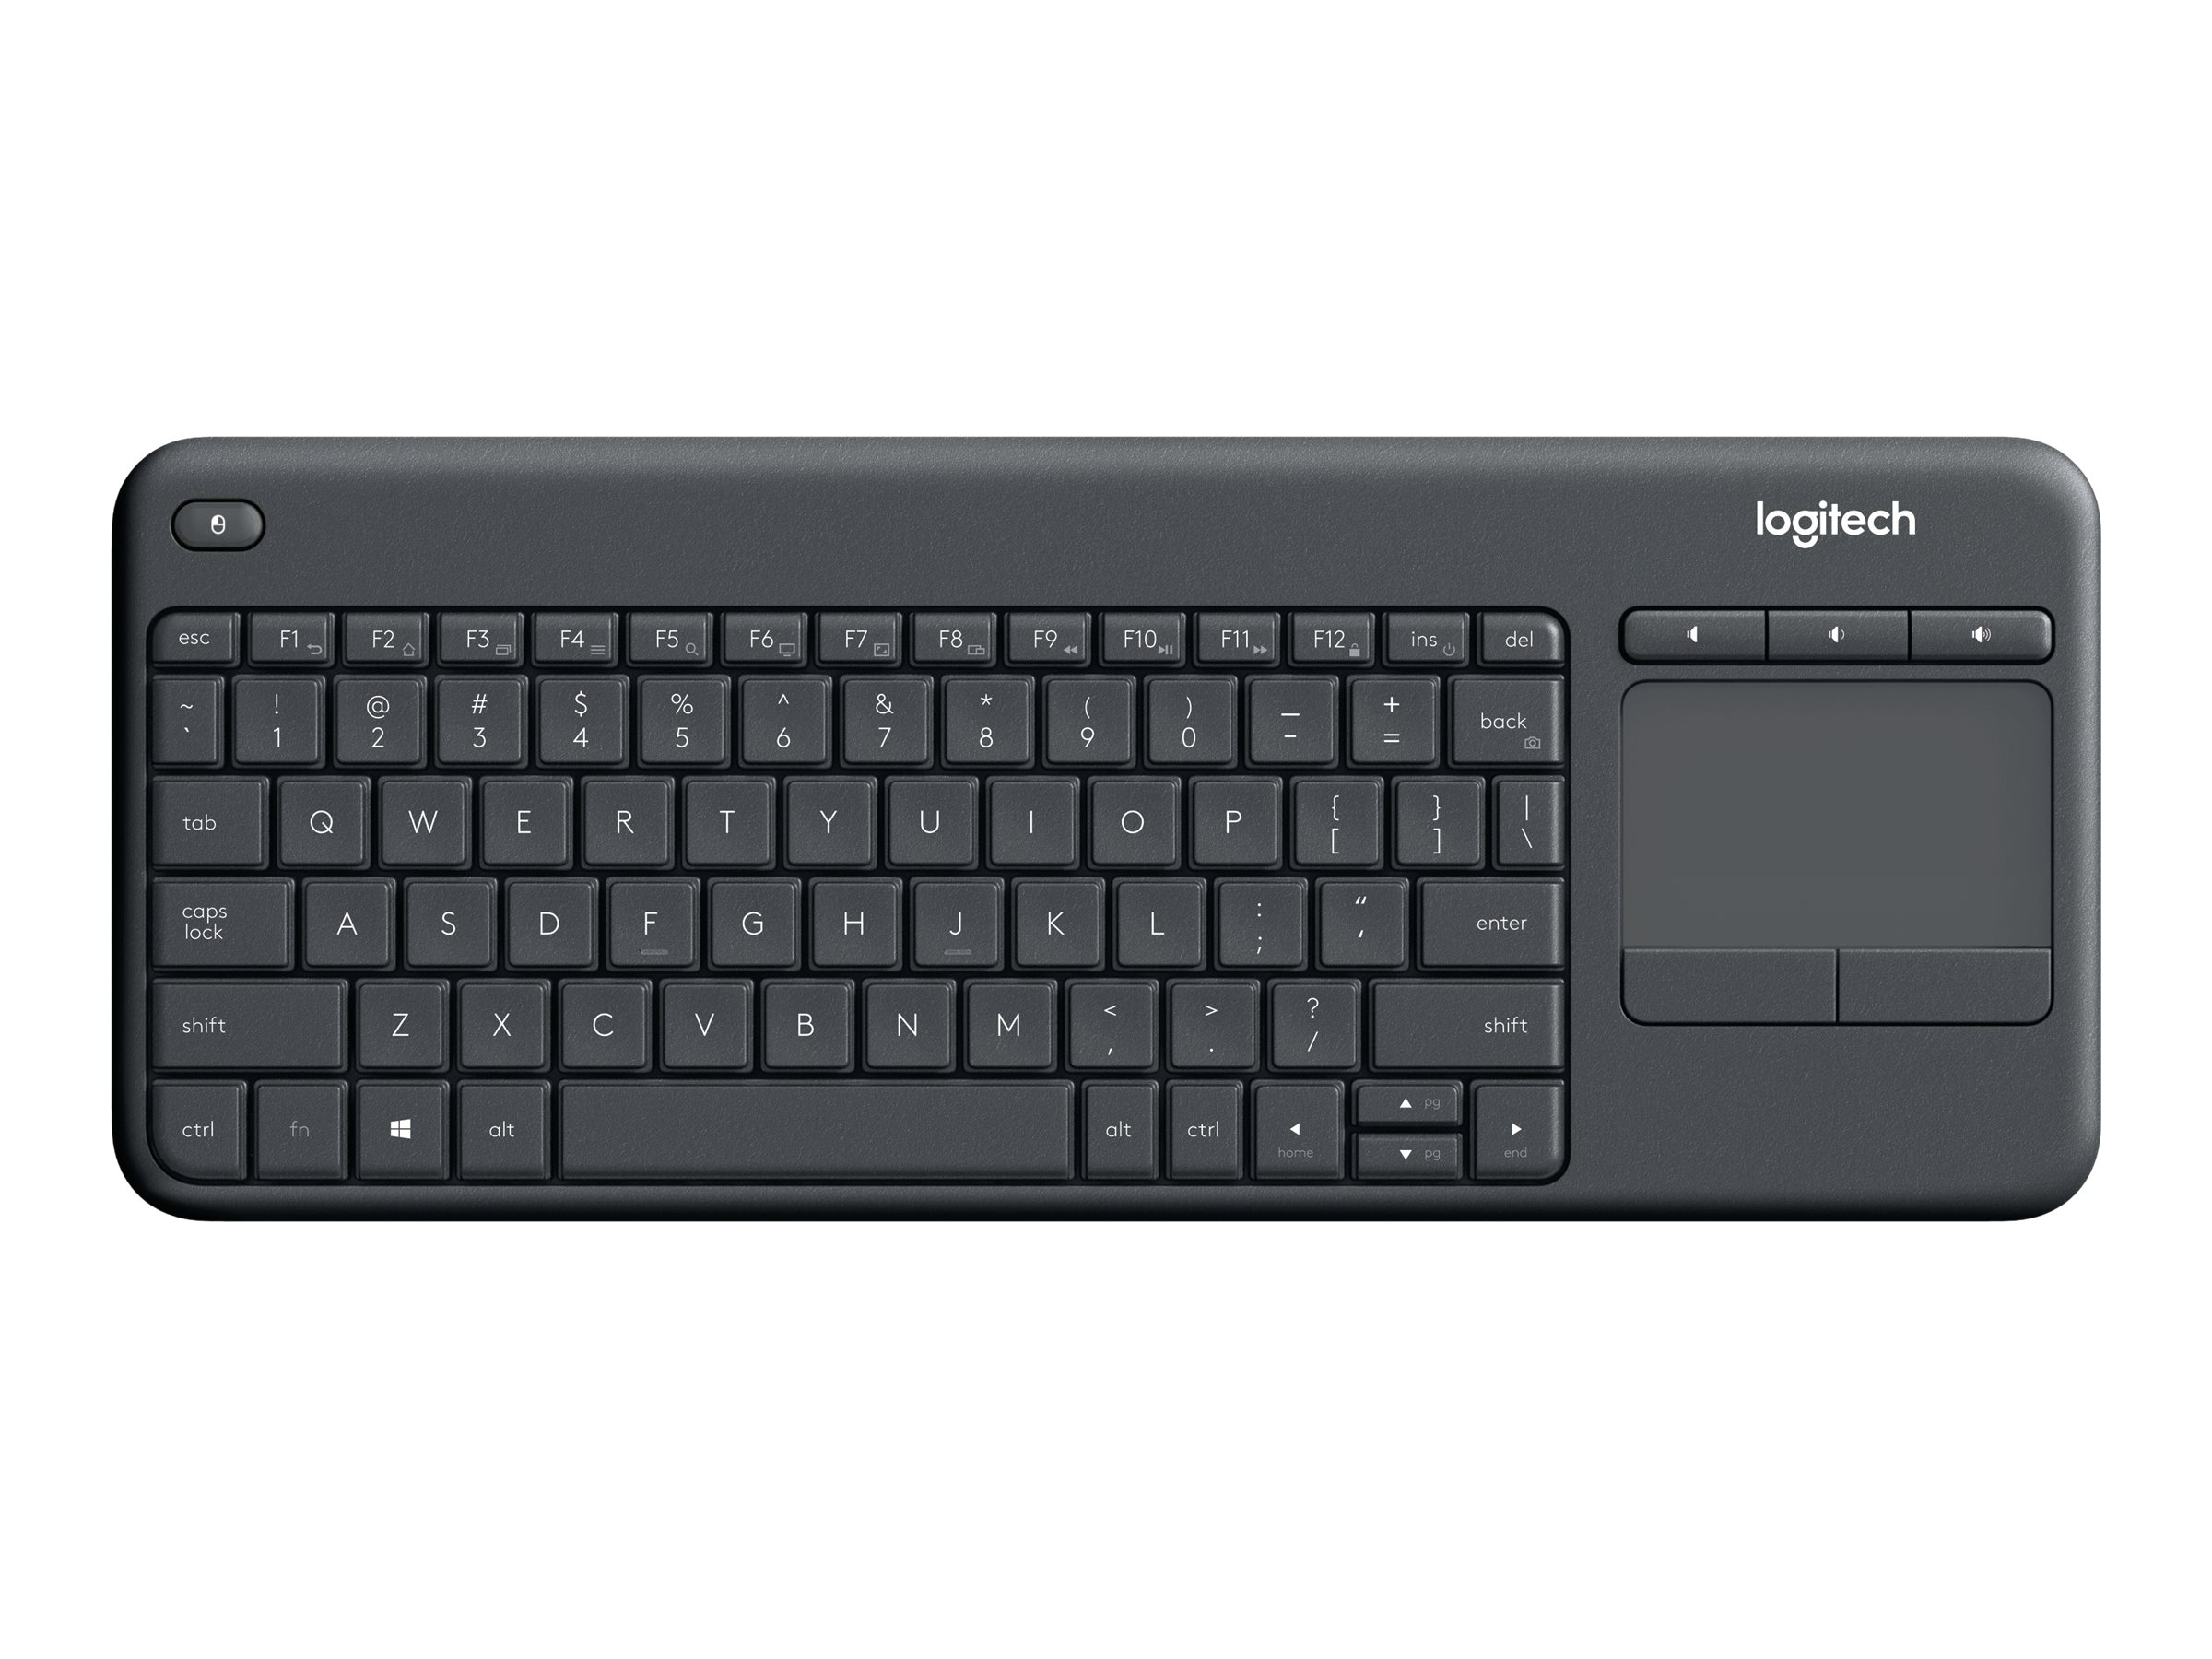 Logitech Wireless Touch Keyboard K400 Plus black